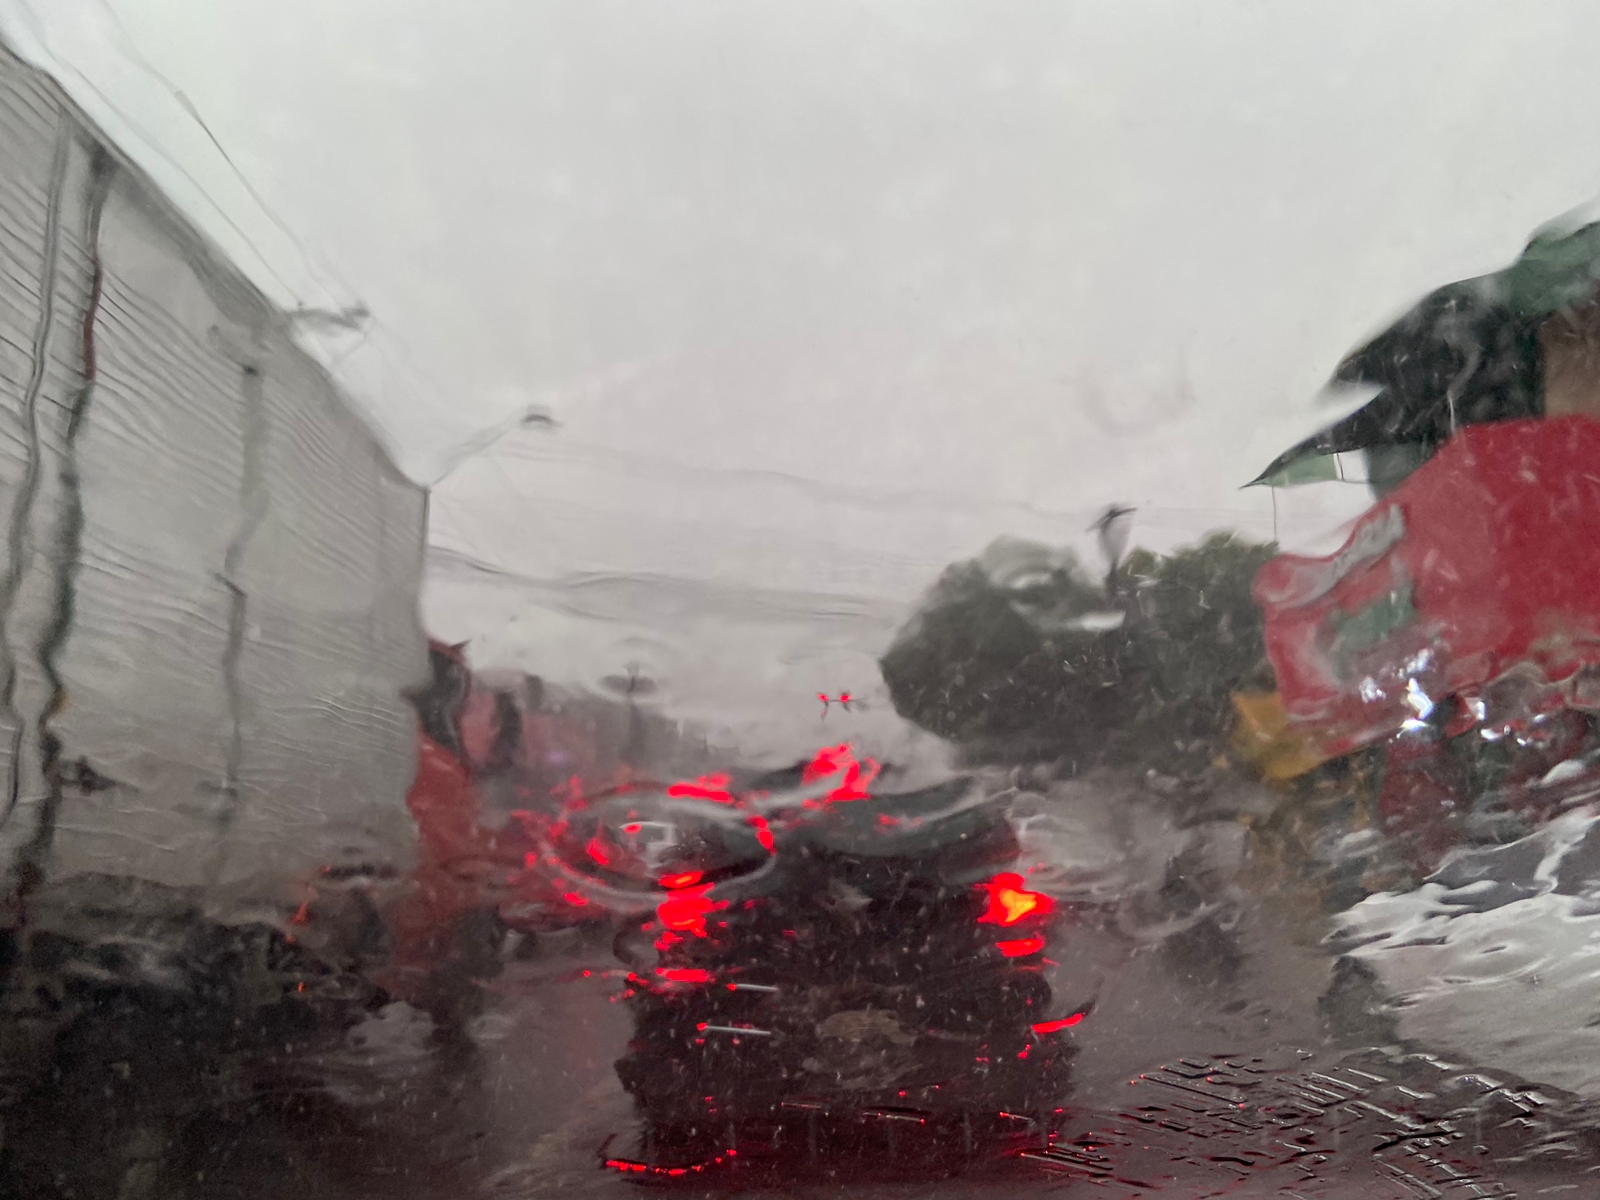 Temporais com fortes chuvas e alagamentos são uma das causas para declaração de situação de emergência - Foto: Francisco Santos/Portal Norte